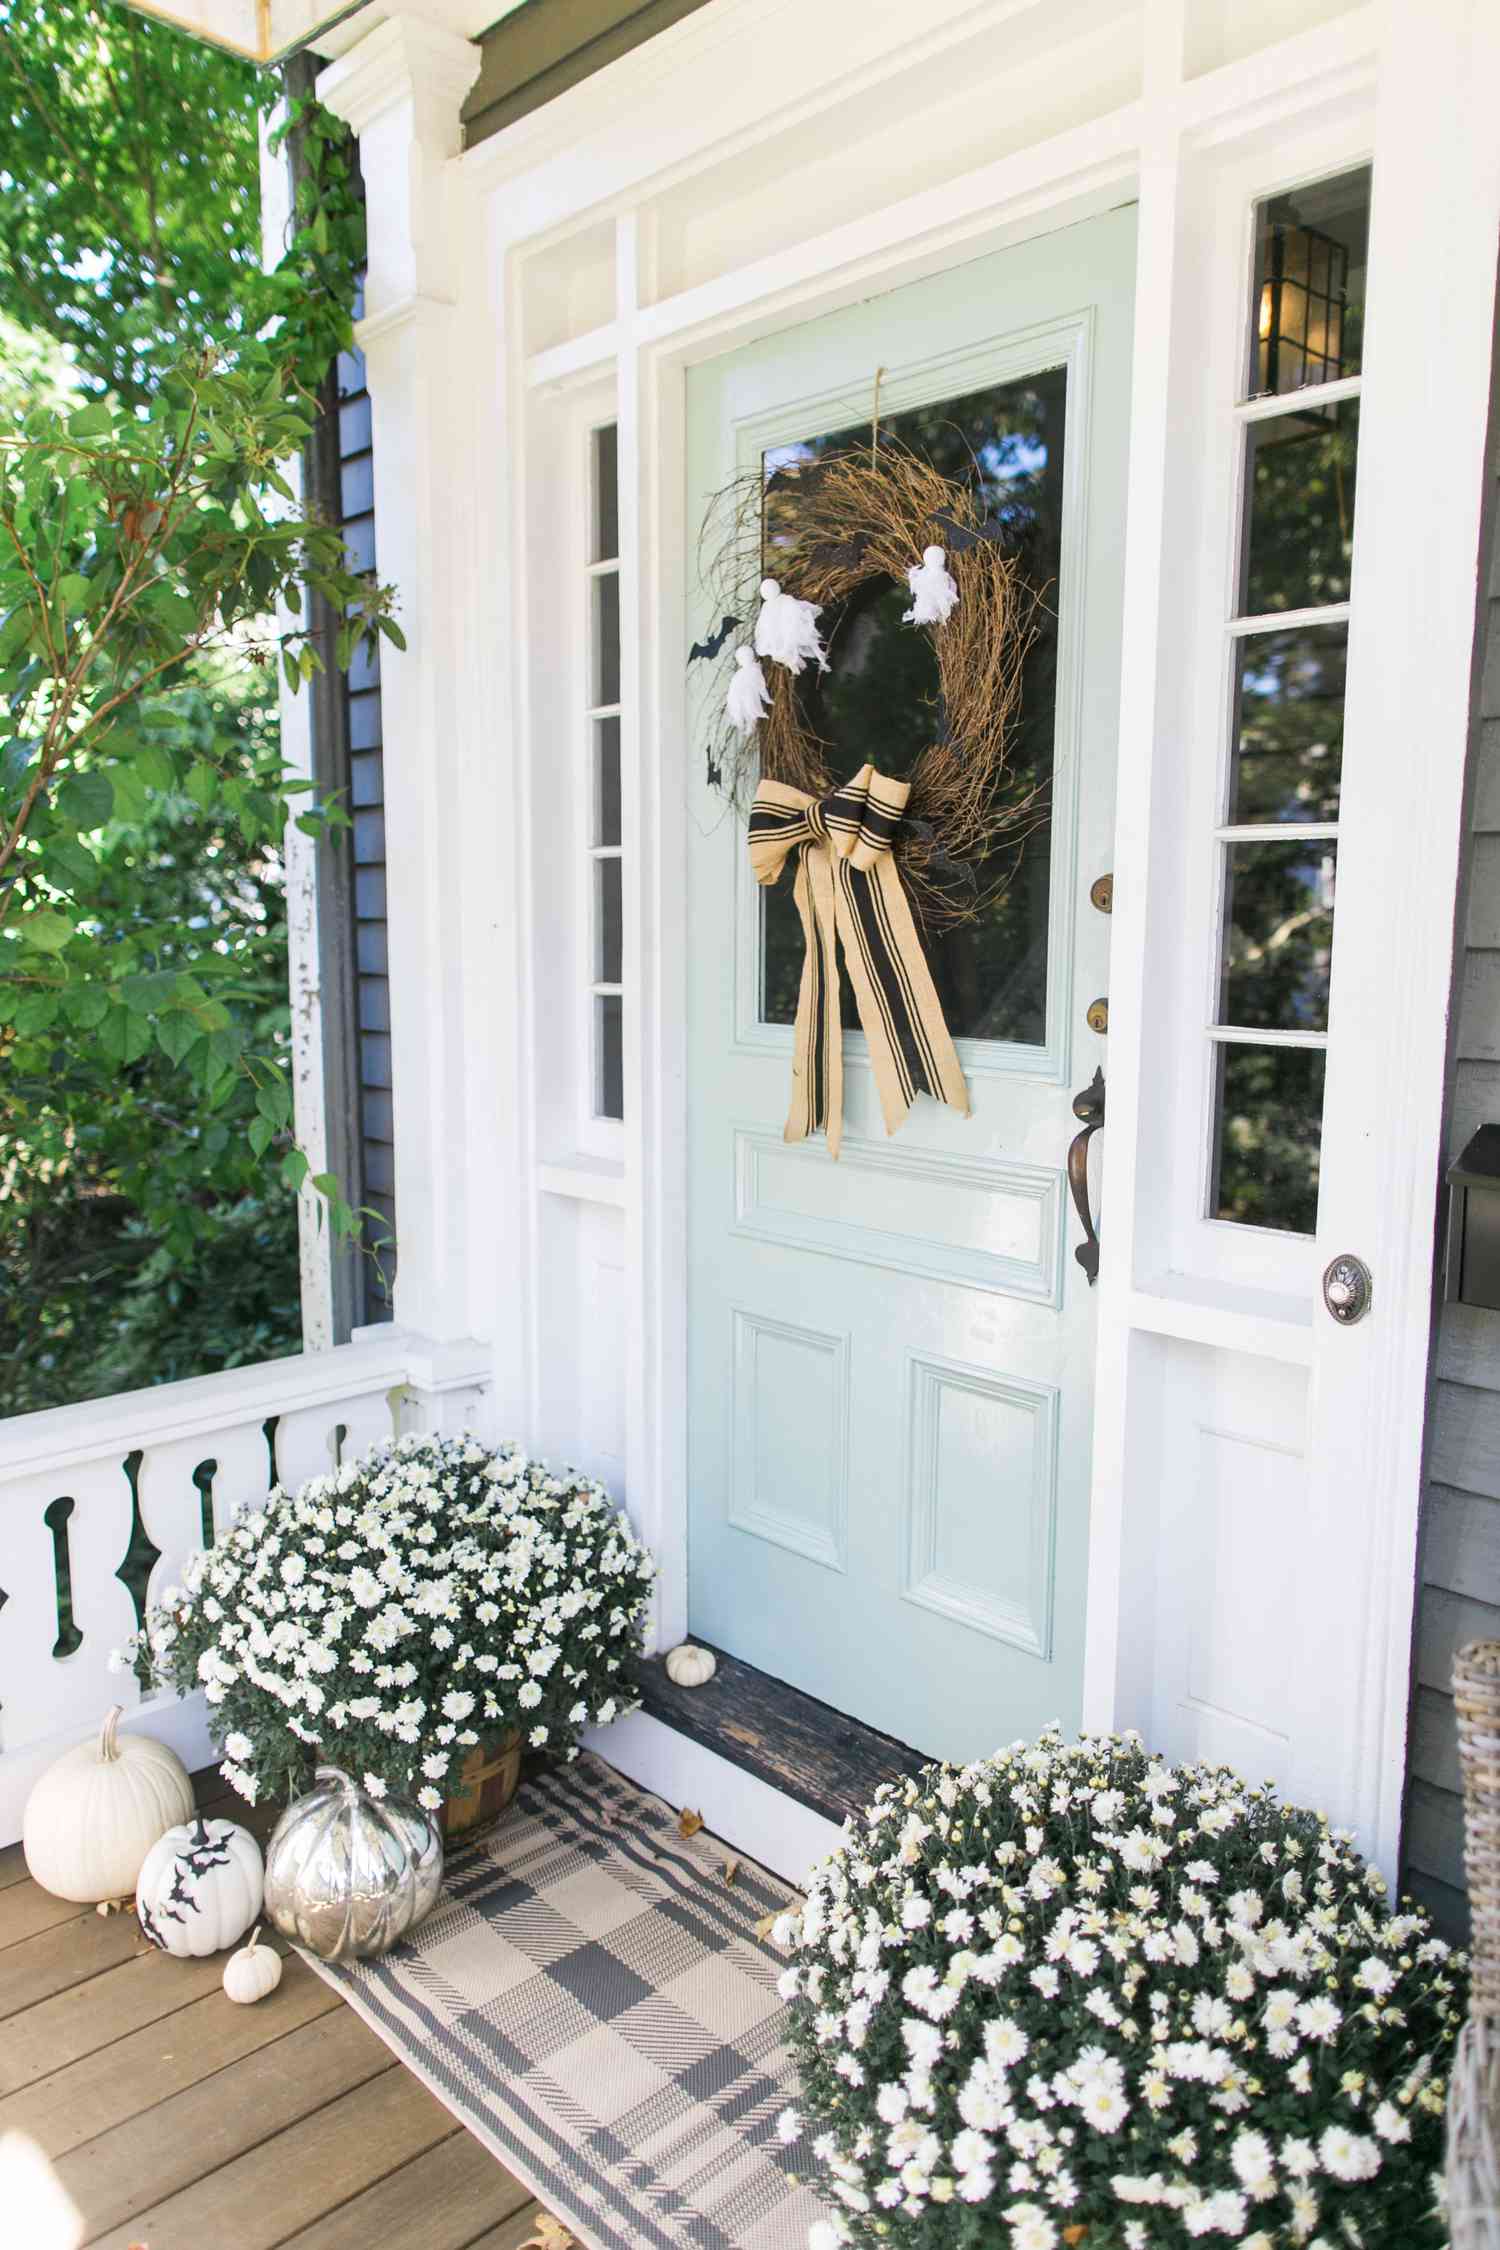 Plaid door mat in front of light blue porch door